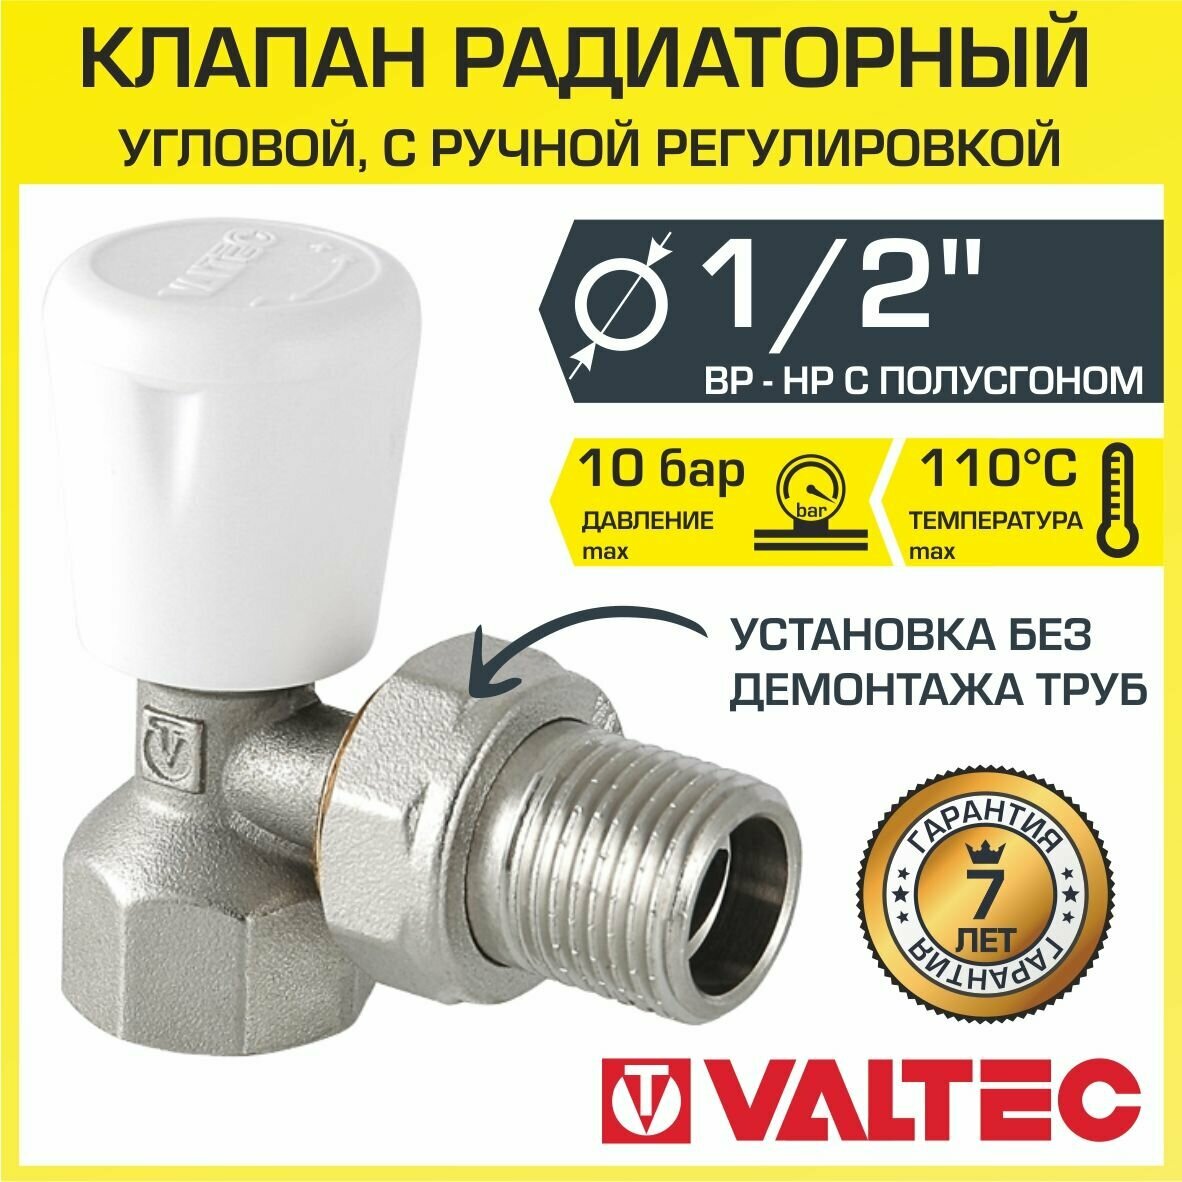 Клапан радиаторный VALTEC угловой 1/2" "мини" с полусгоном, ручной, компактный, для радиатора (батареи) отопления VT.017. N.04 - фото №2